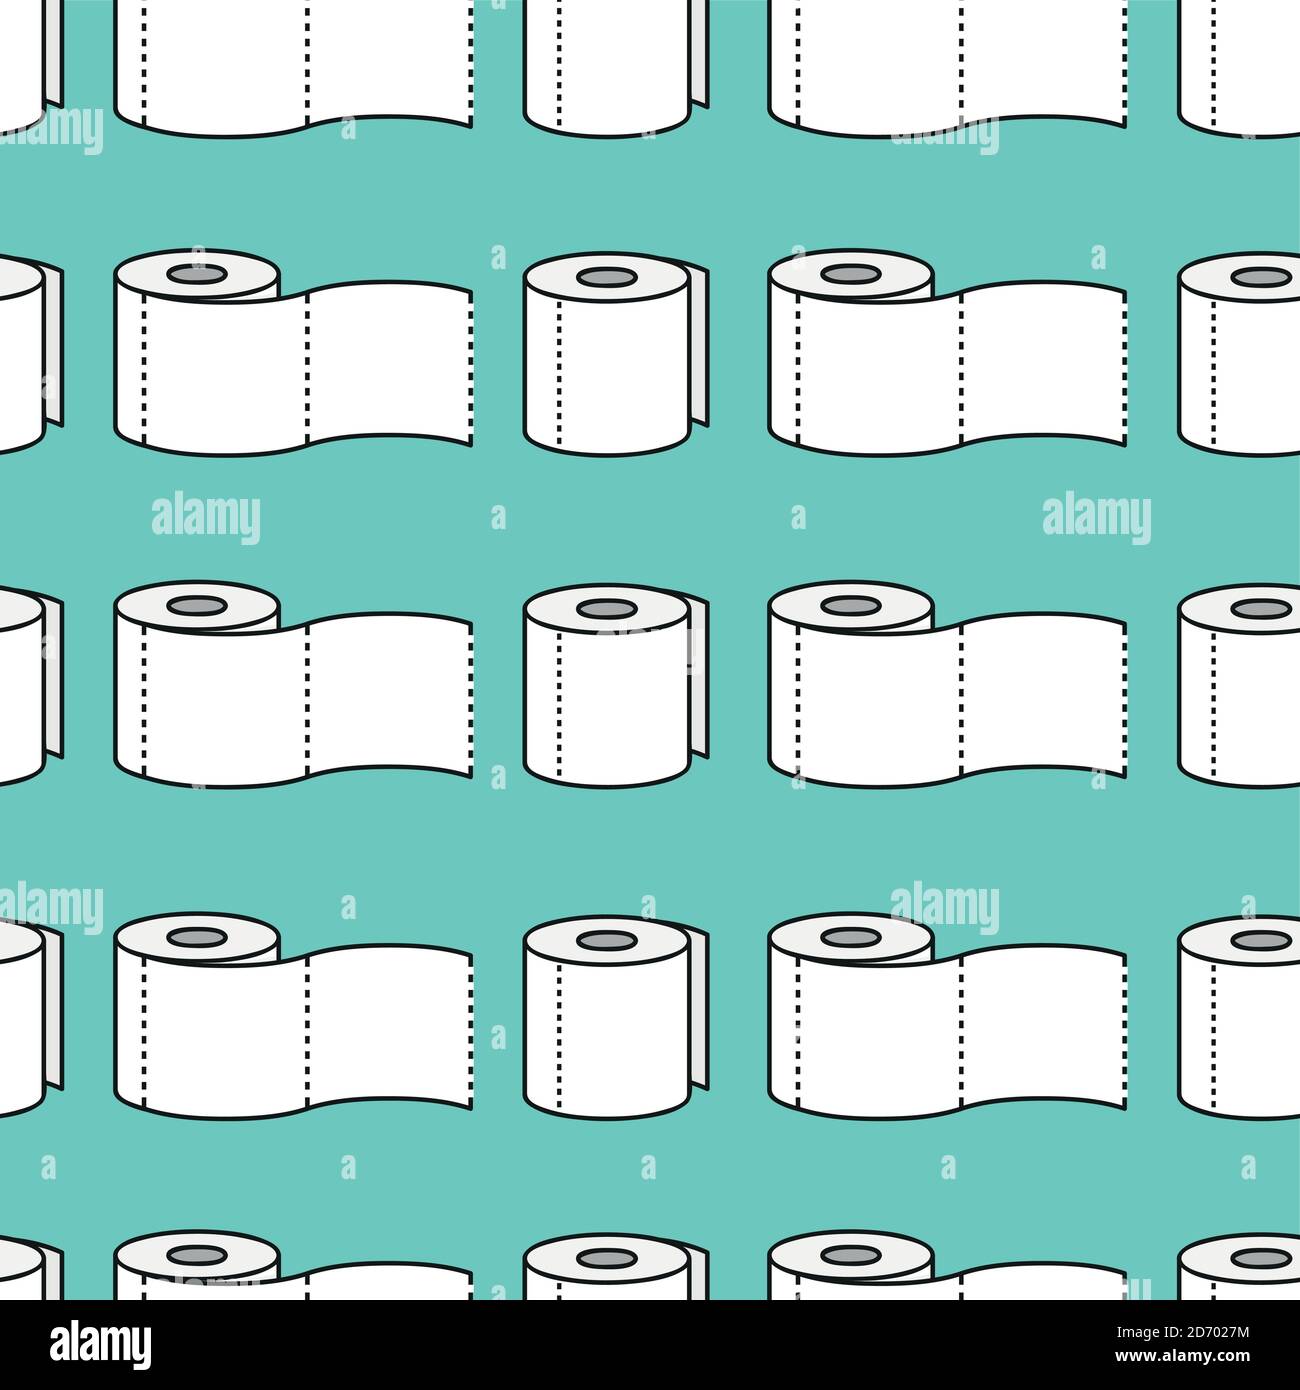 Rolle von Toilettenpapier nahtlose Muster Vektor-Illustration EPS10 Stock Vektor